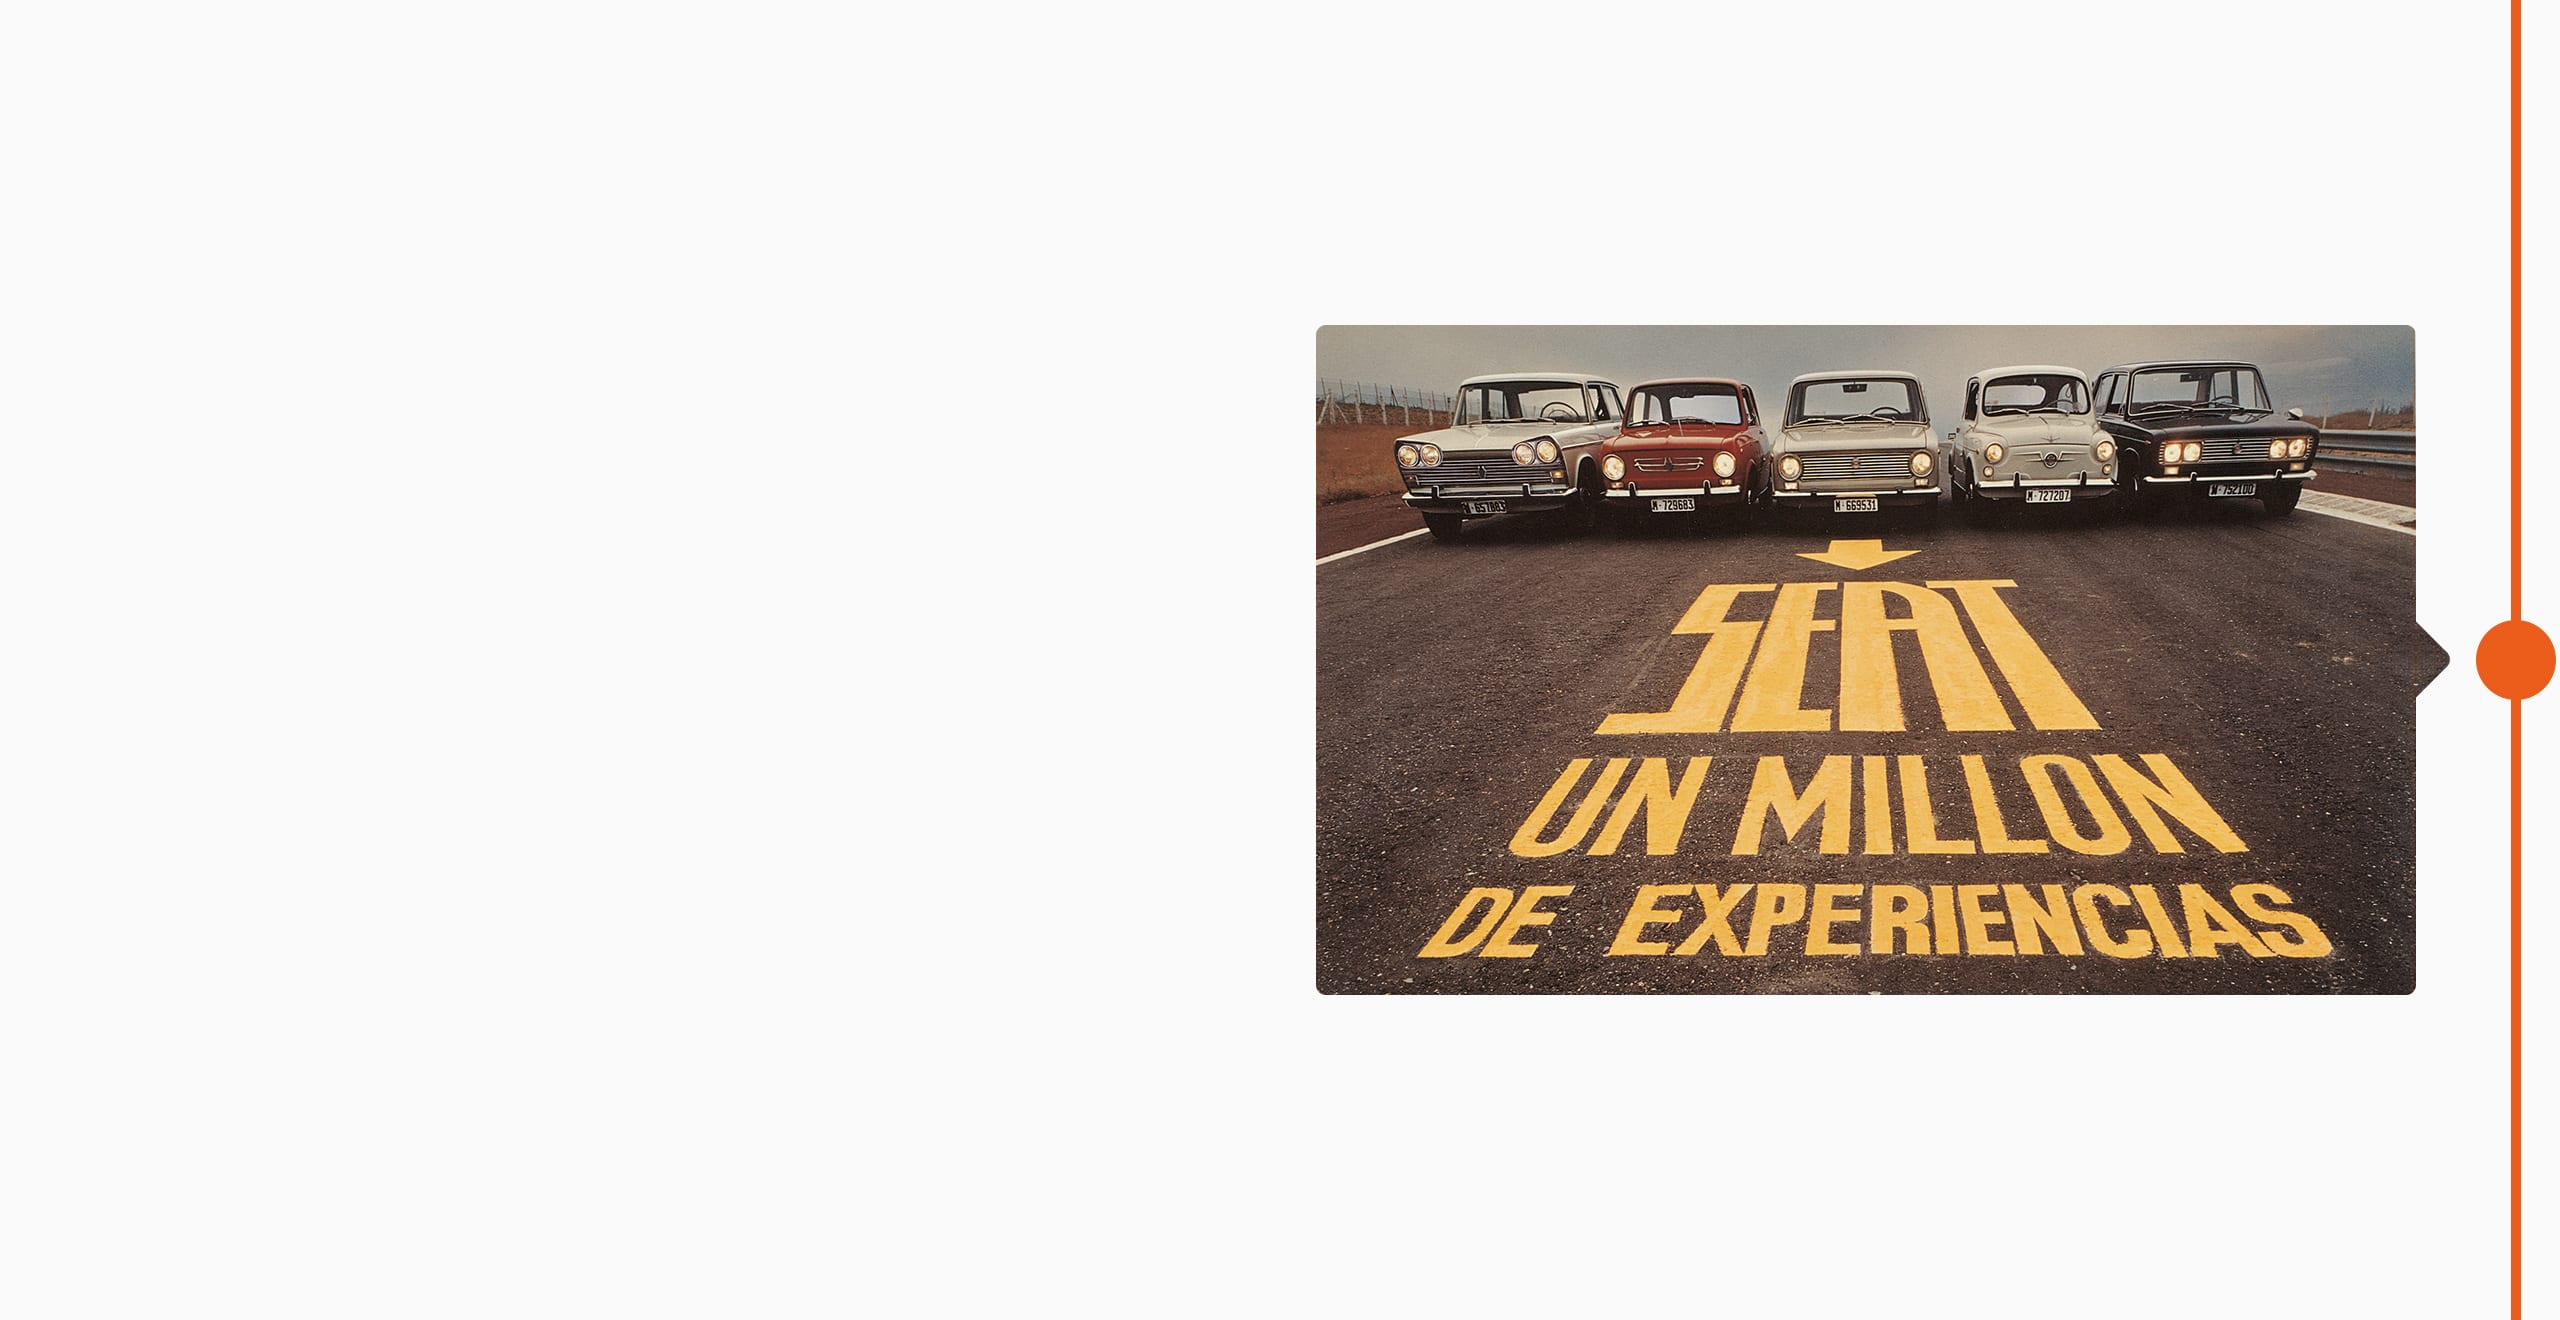 Histoire de la marque SEAT 1974 - cinq voitures classiques alignées dans une rue un million d'expériences